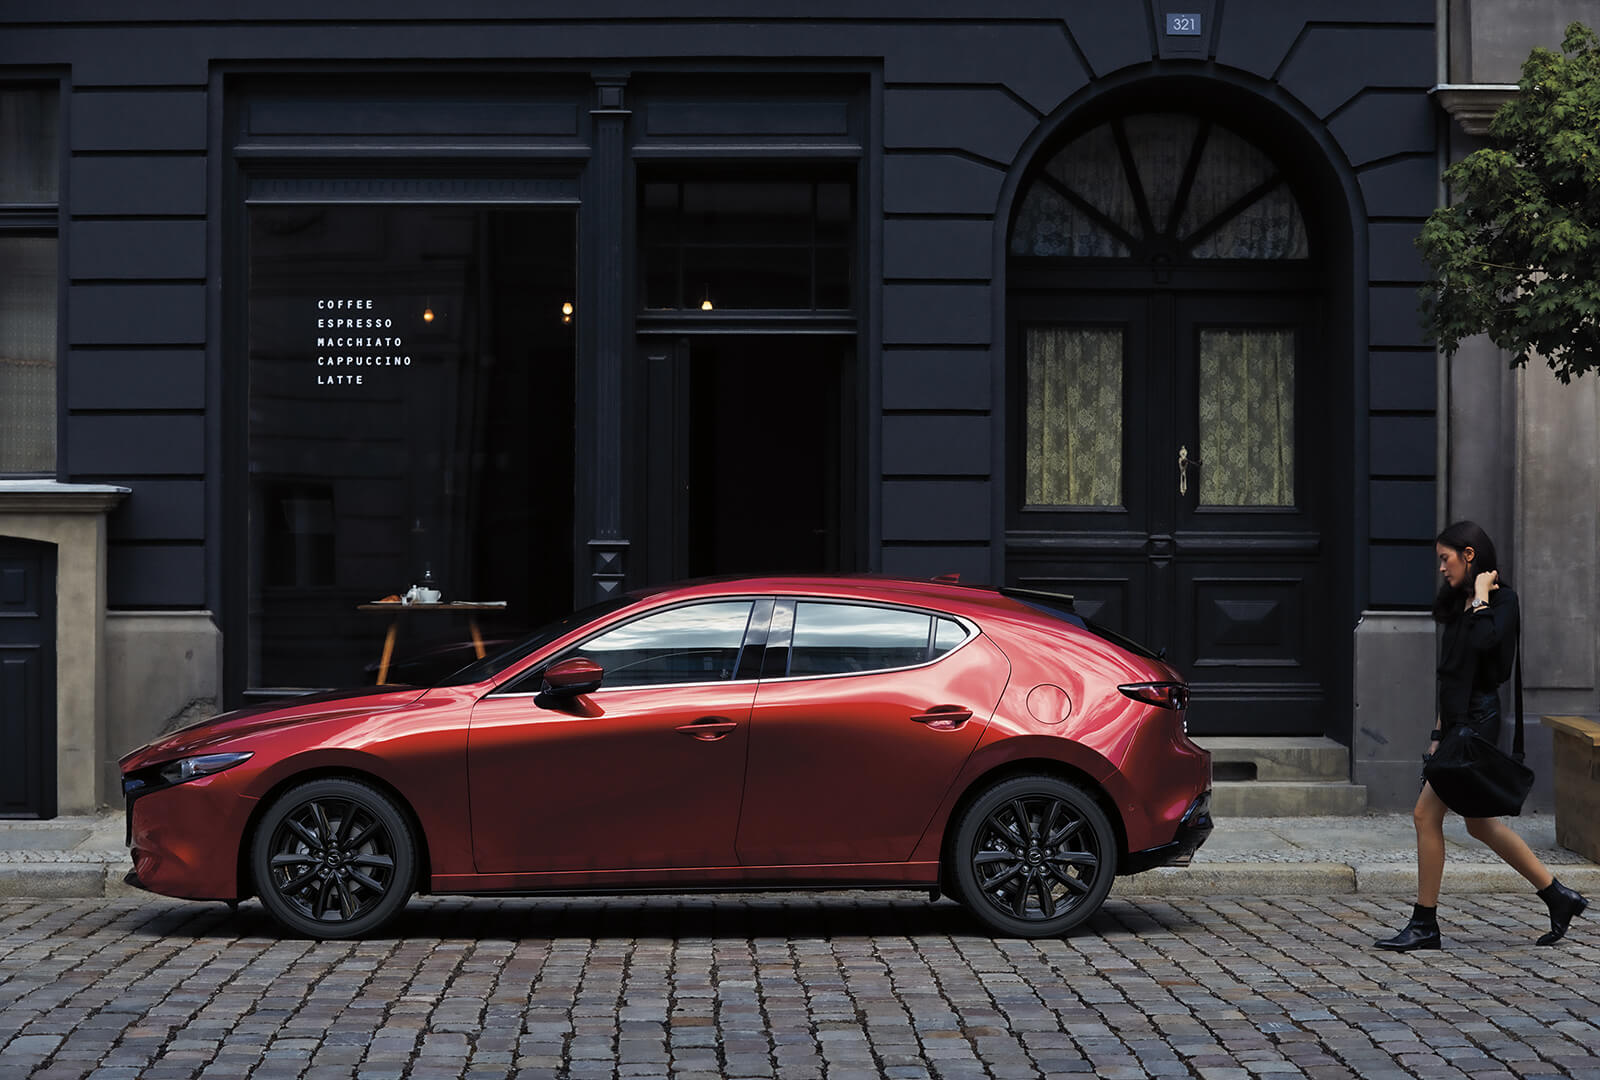 Une Mazda3 rouge vue de côté, dans une rue pavée, avec une jeune modeuse qui s’approche depuis la droite.